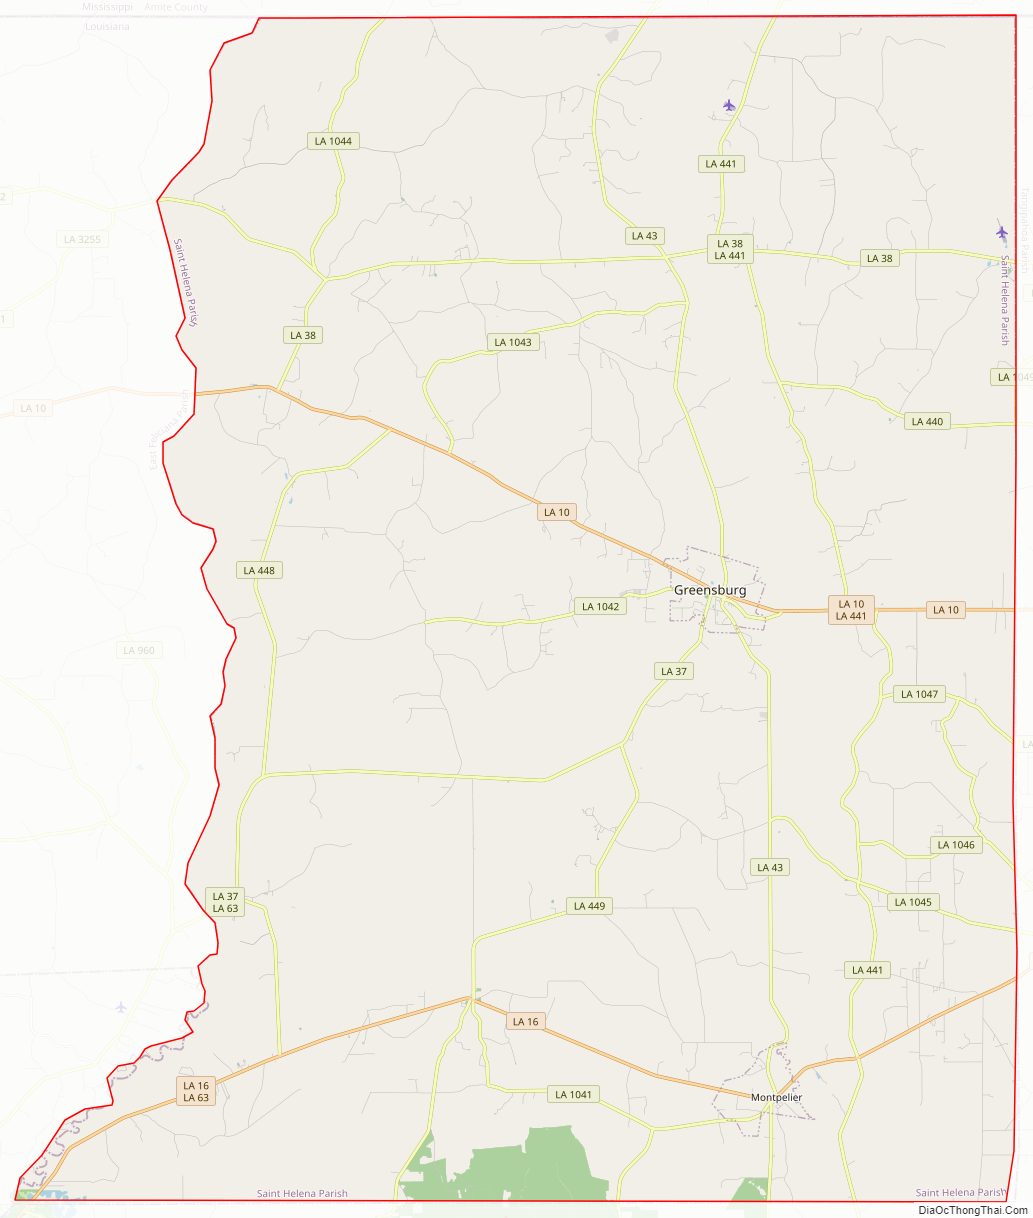 Street map of Saint Helena Parish, Louisiana